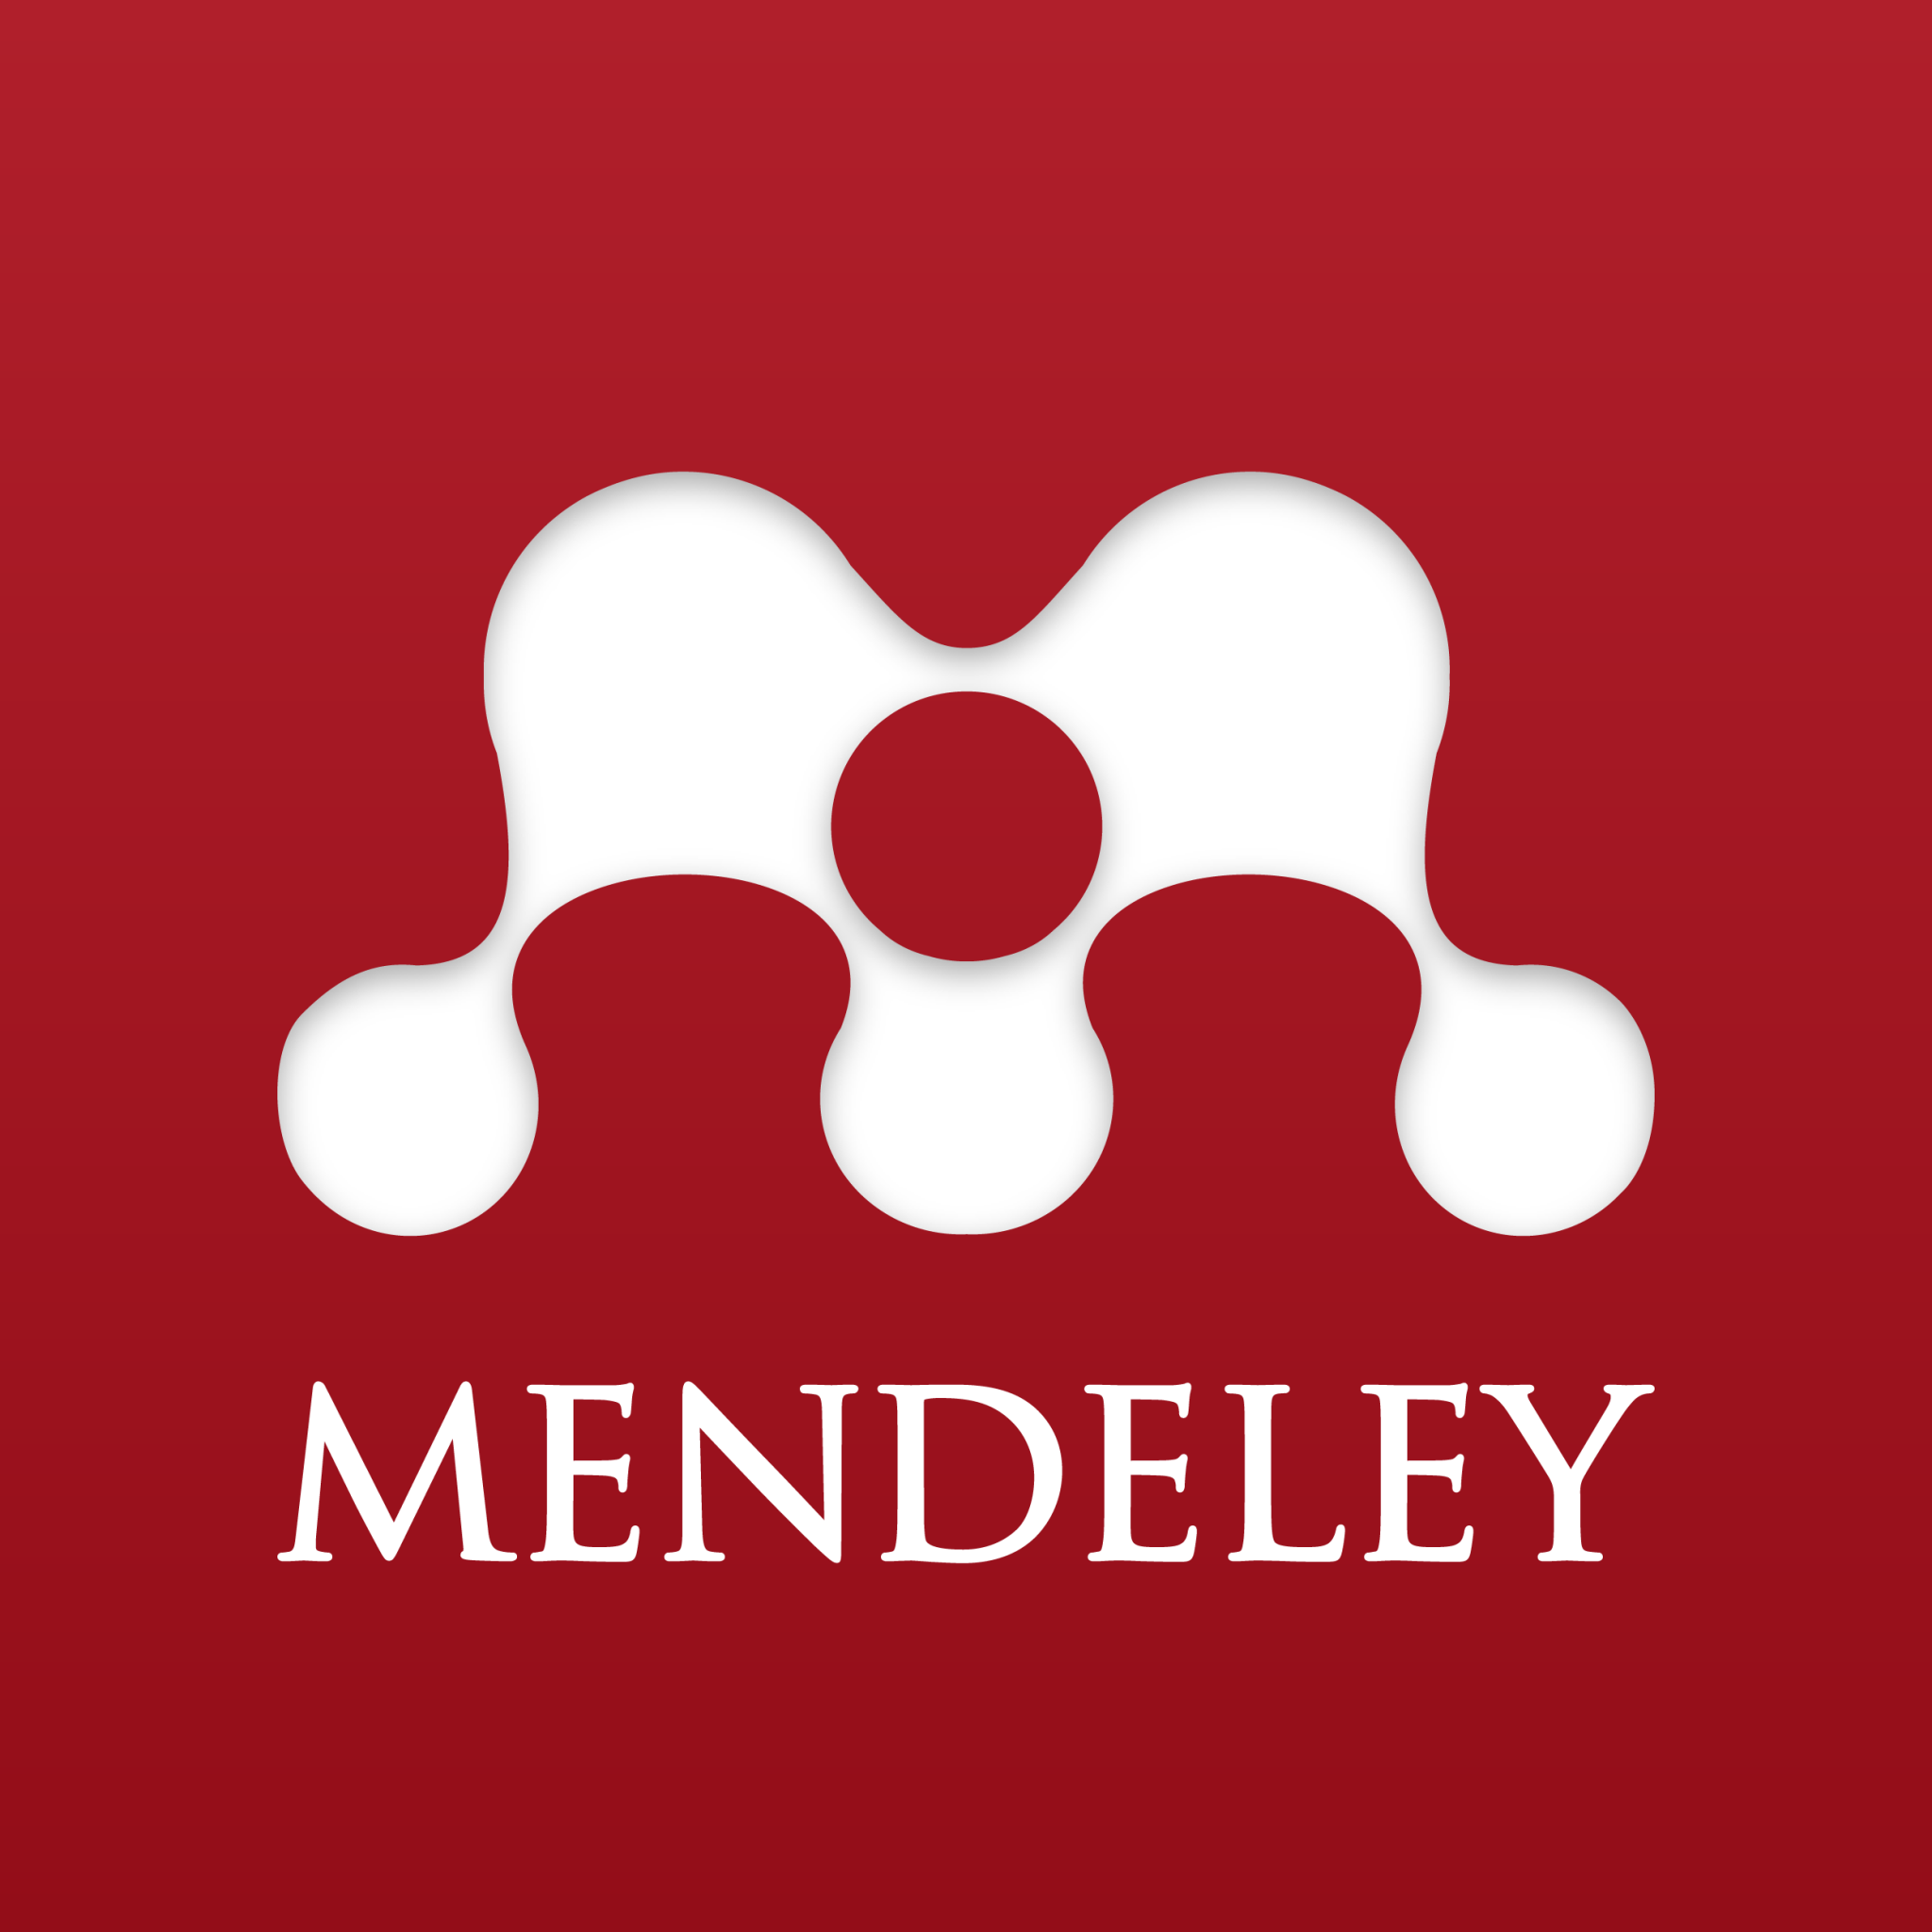 download mendeley 1.15